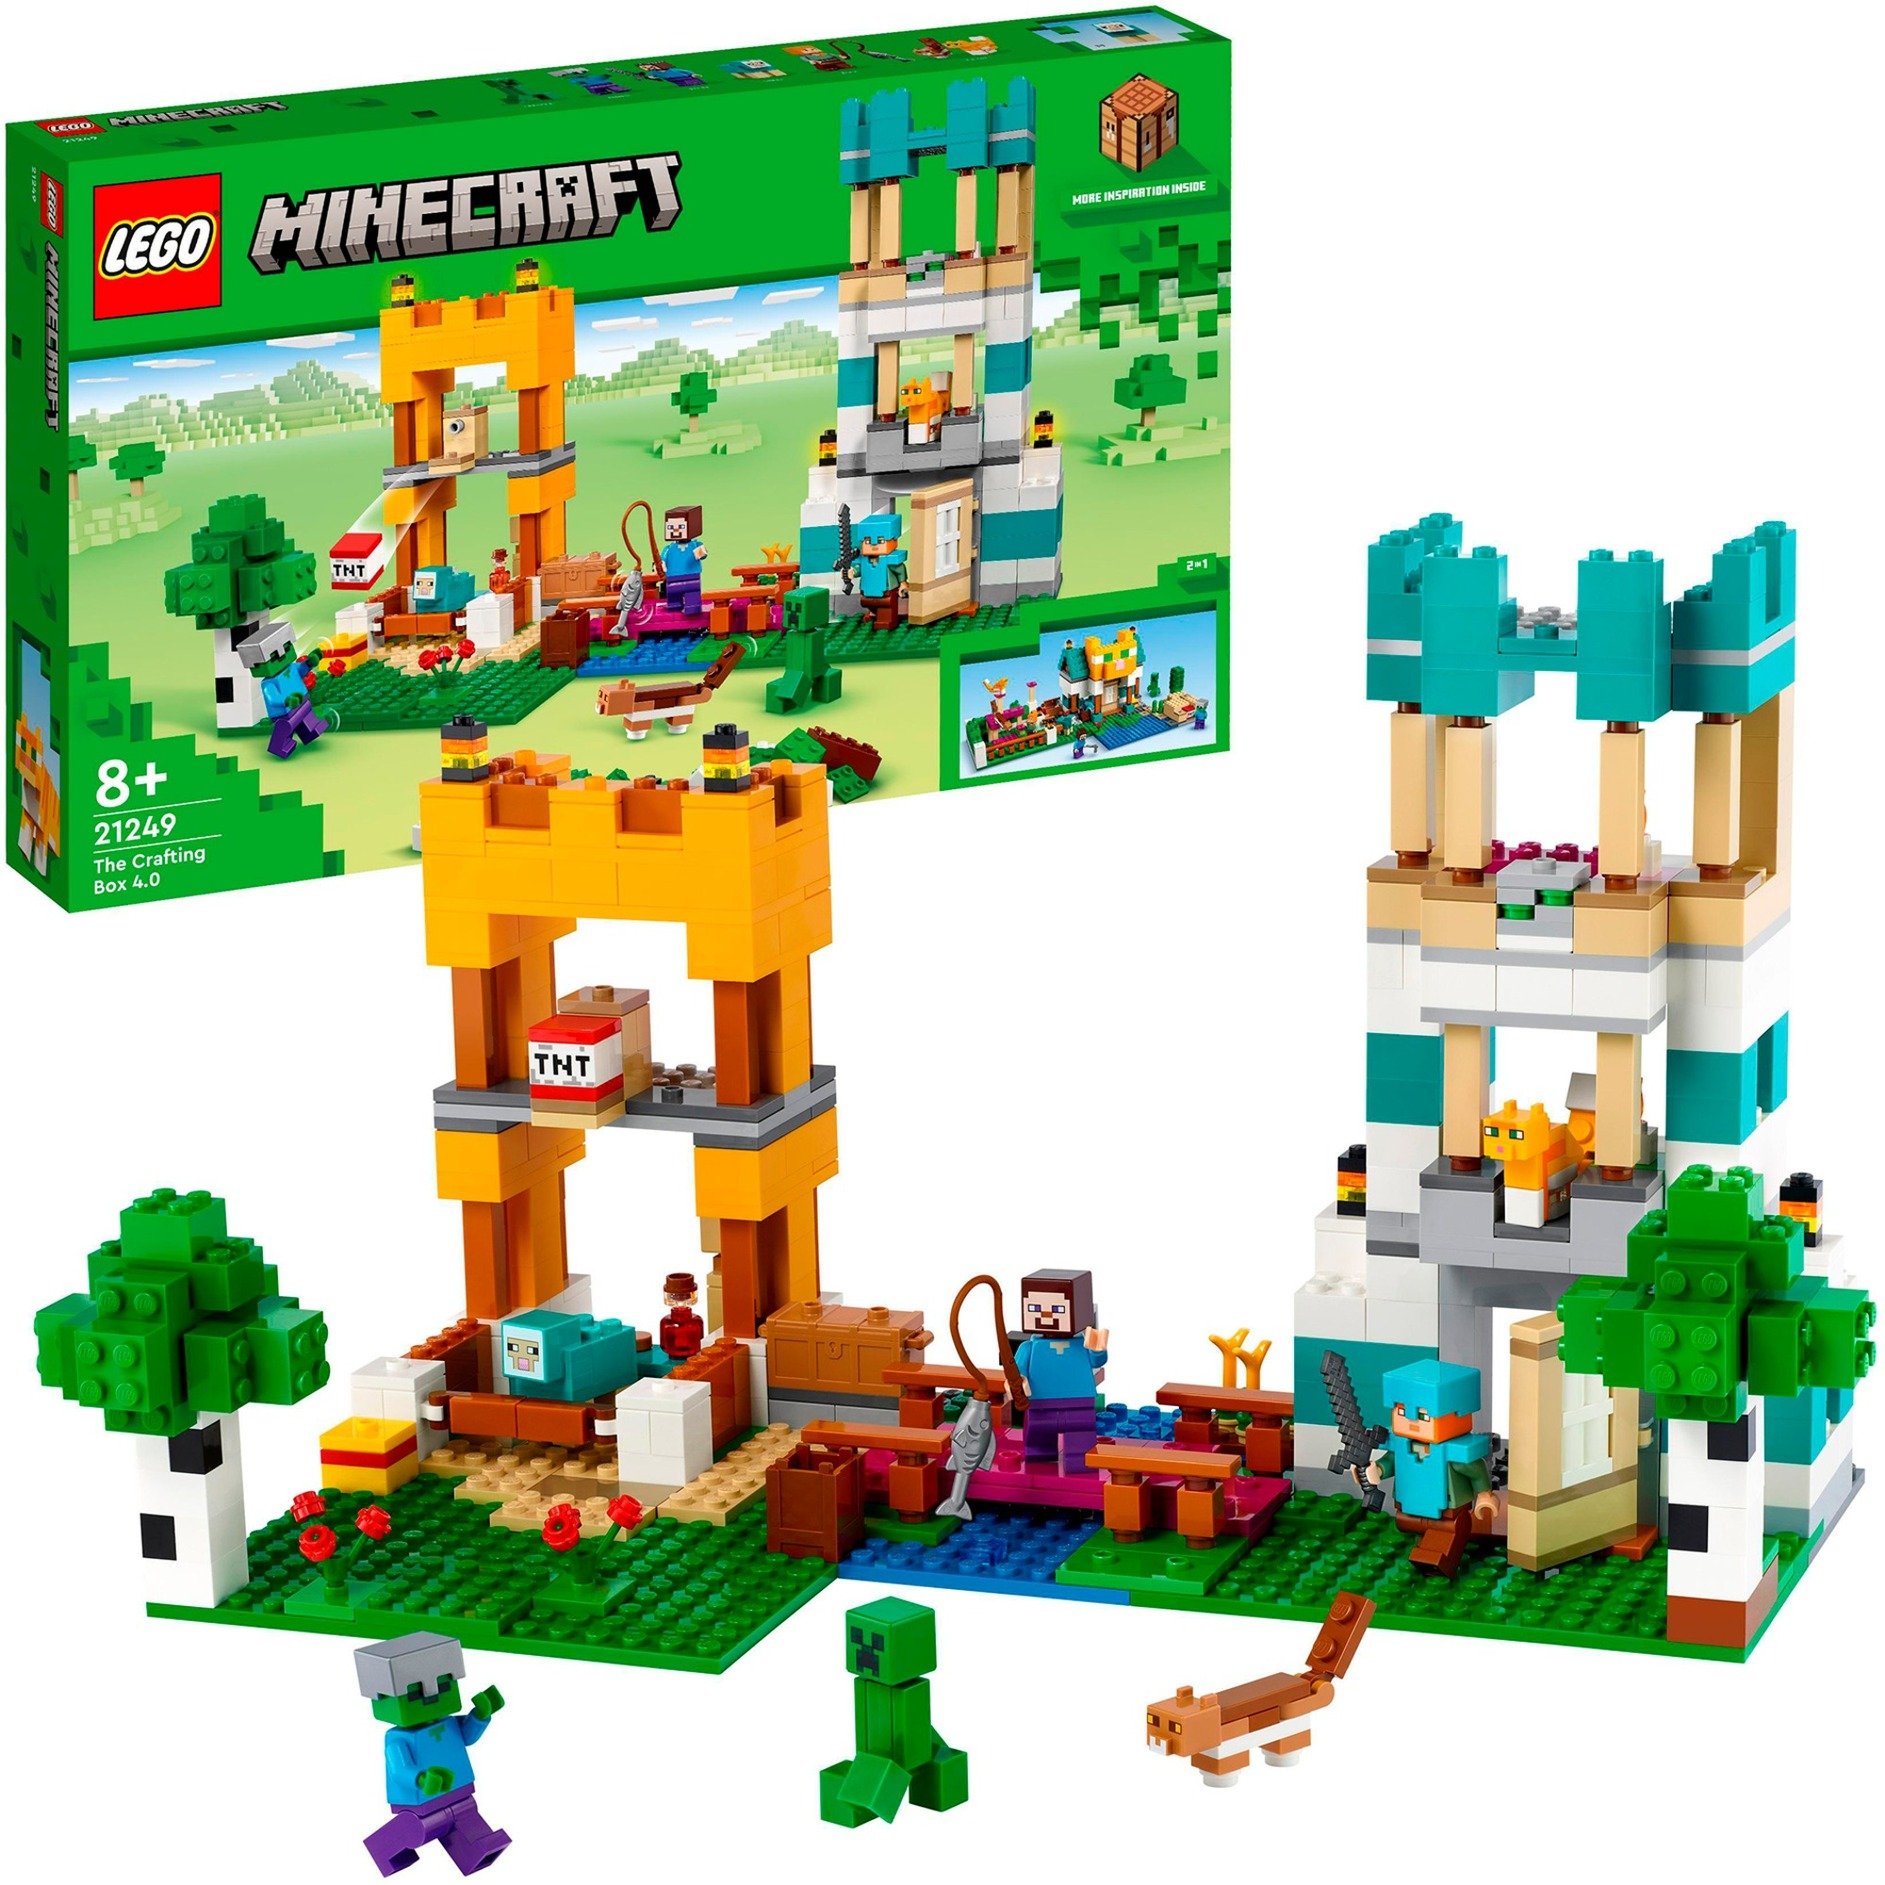 21249 Minecraft Die Crafting-Box 4.0, Konstruktionsspielzeug von Lego